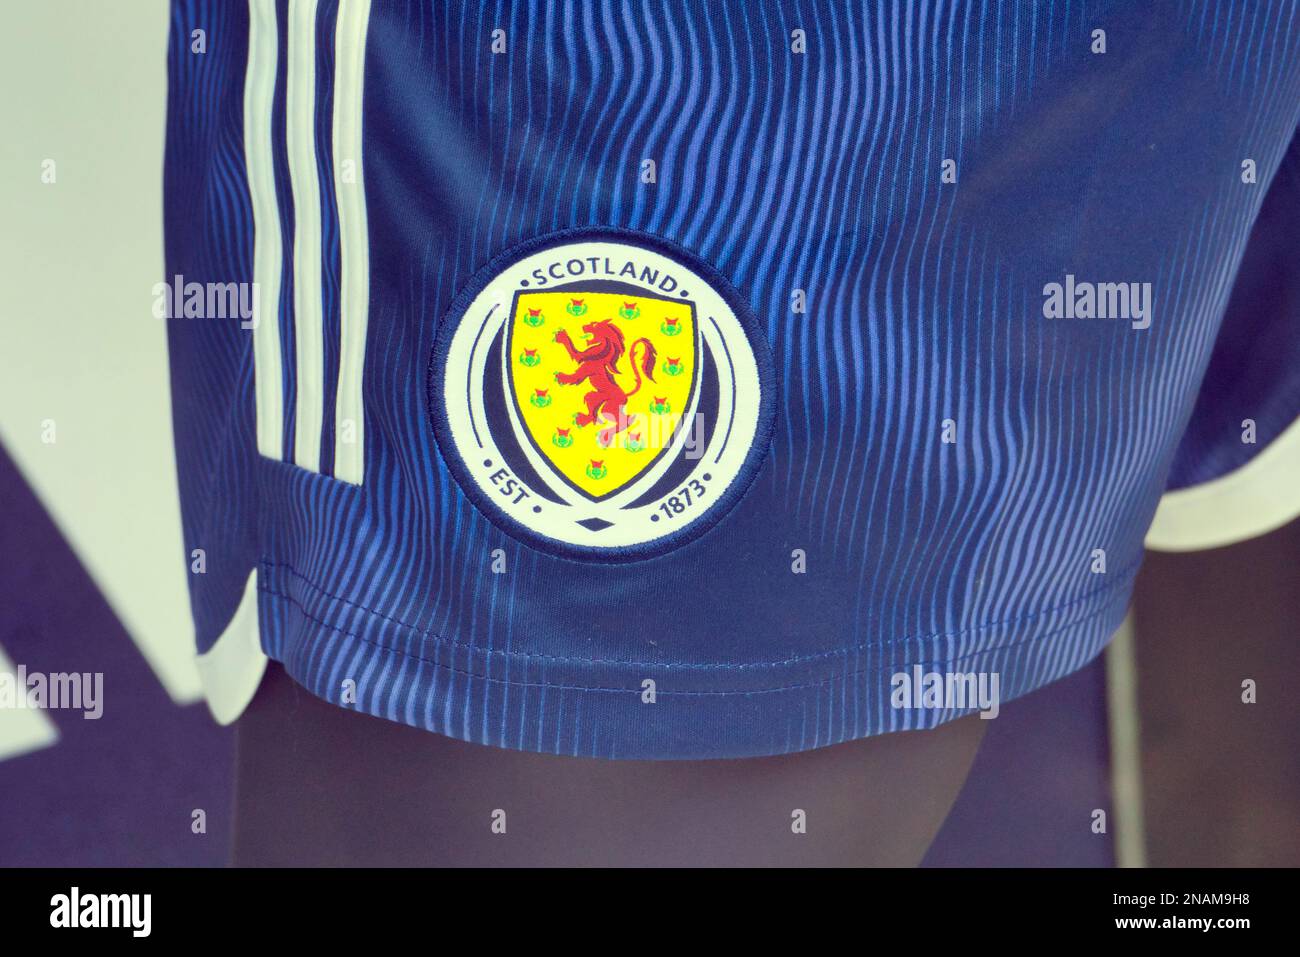 Camiseta e insignia de la selección nacional de fútbol de Escocia Foto de stock